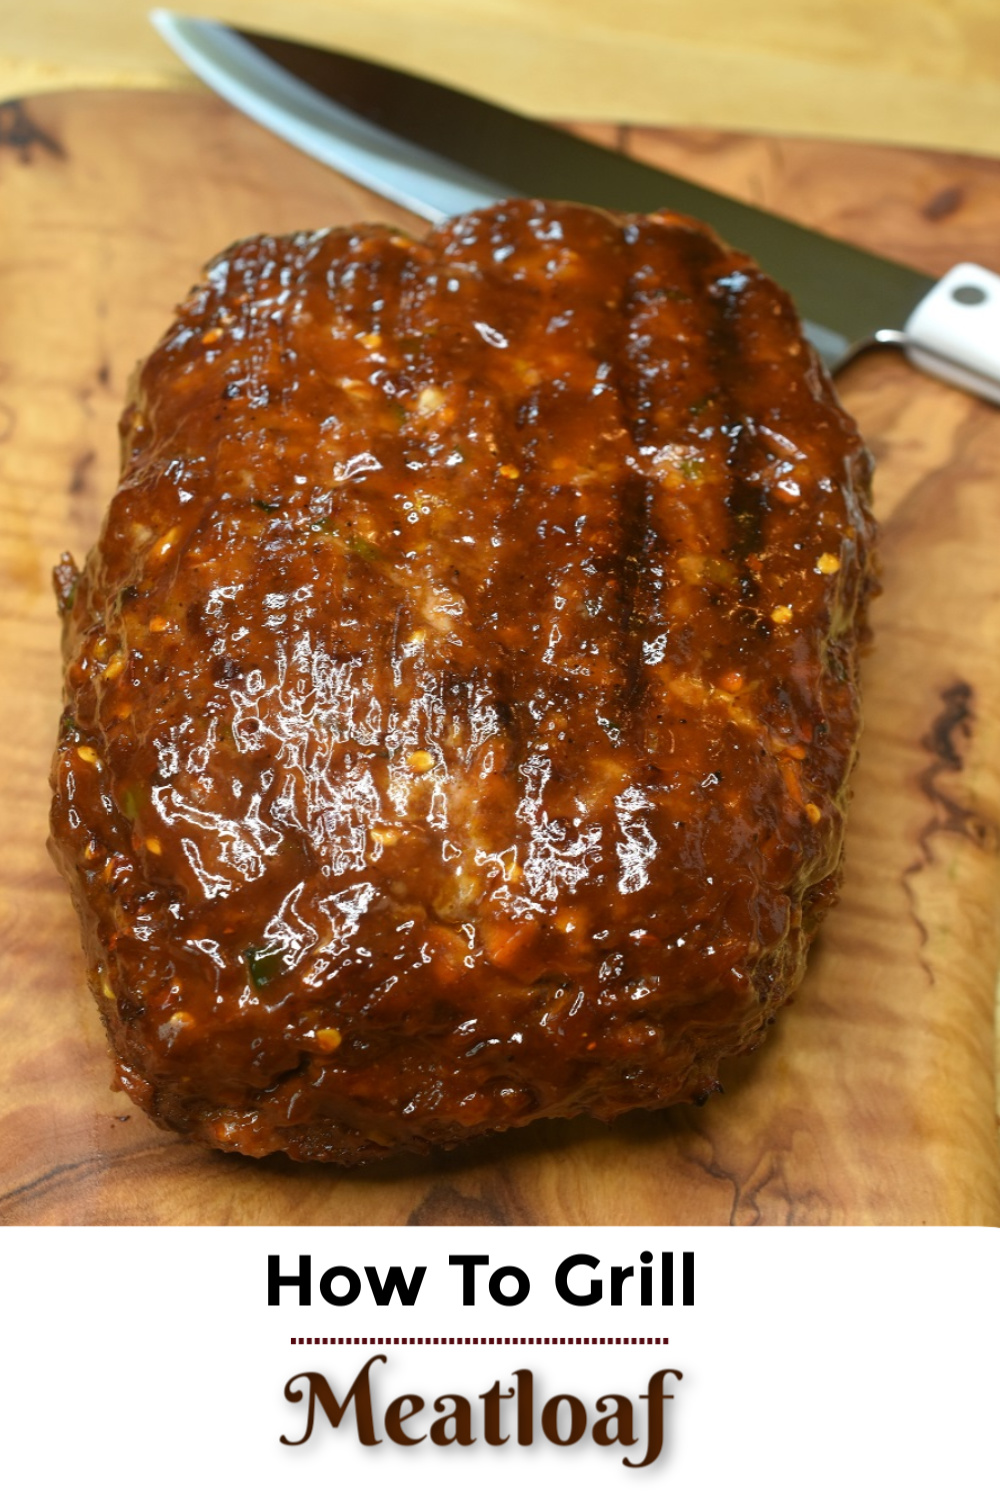 Grilled Meatloaf recipe
BBQ meatloaf recipe